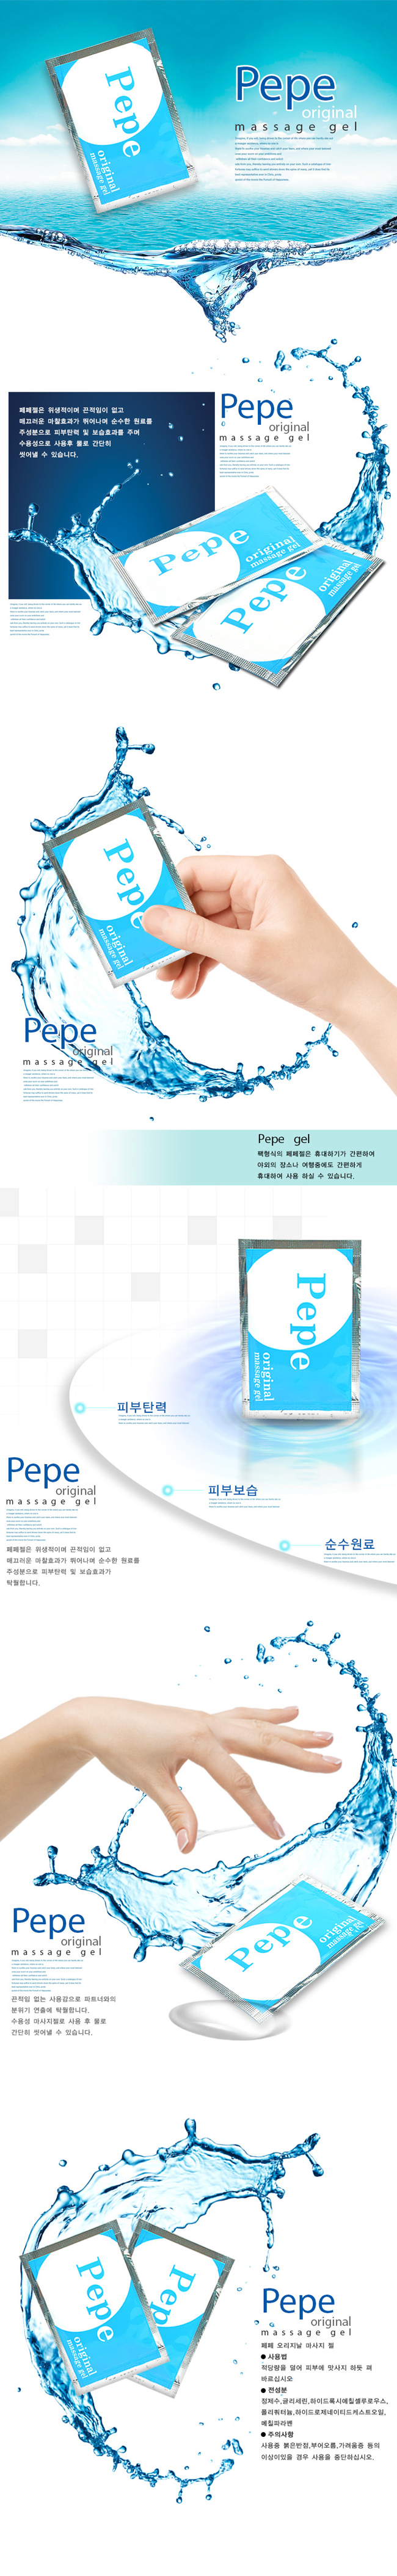 [피부보습 특화] 페페젤 Pepee gel original